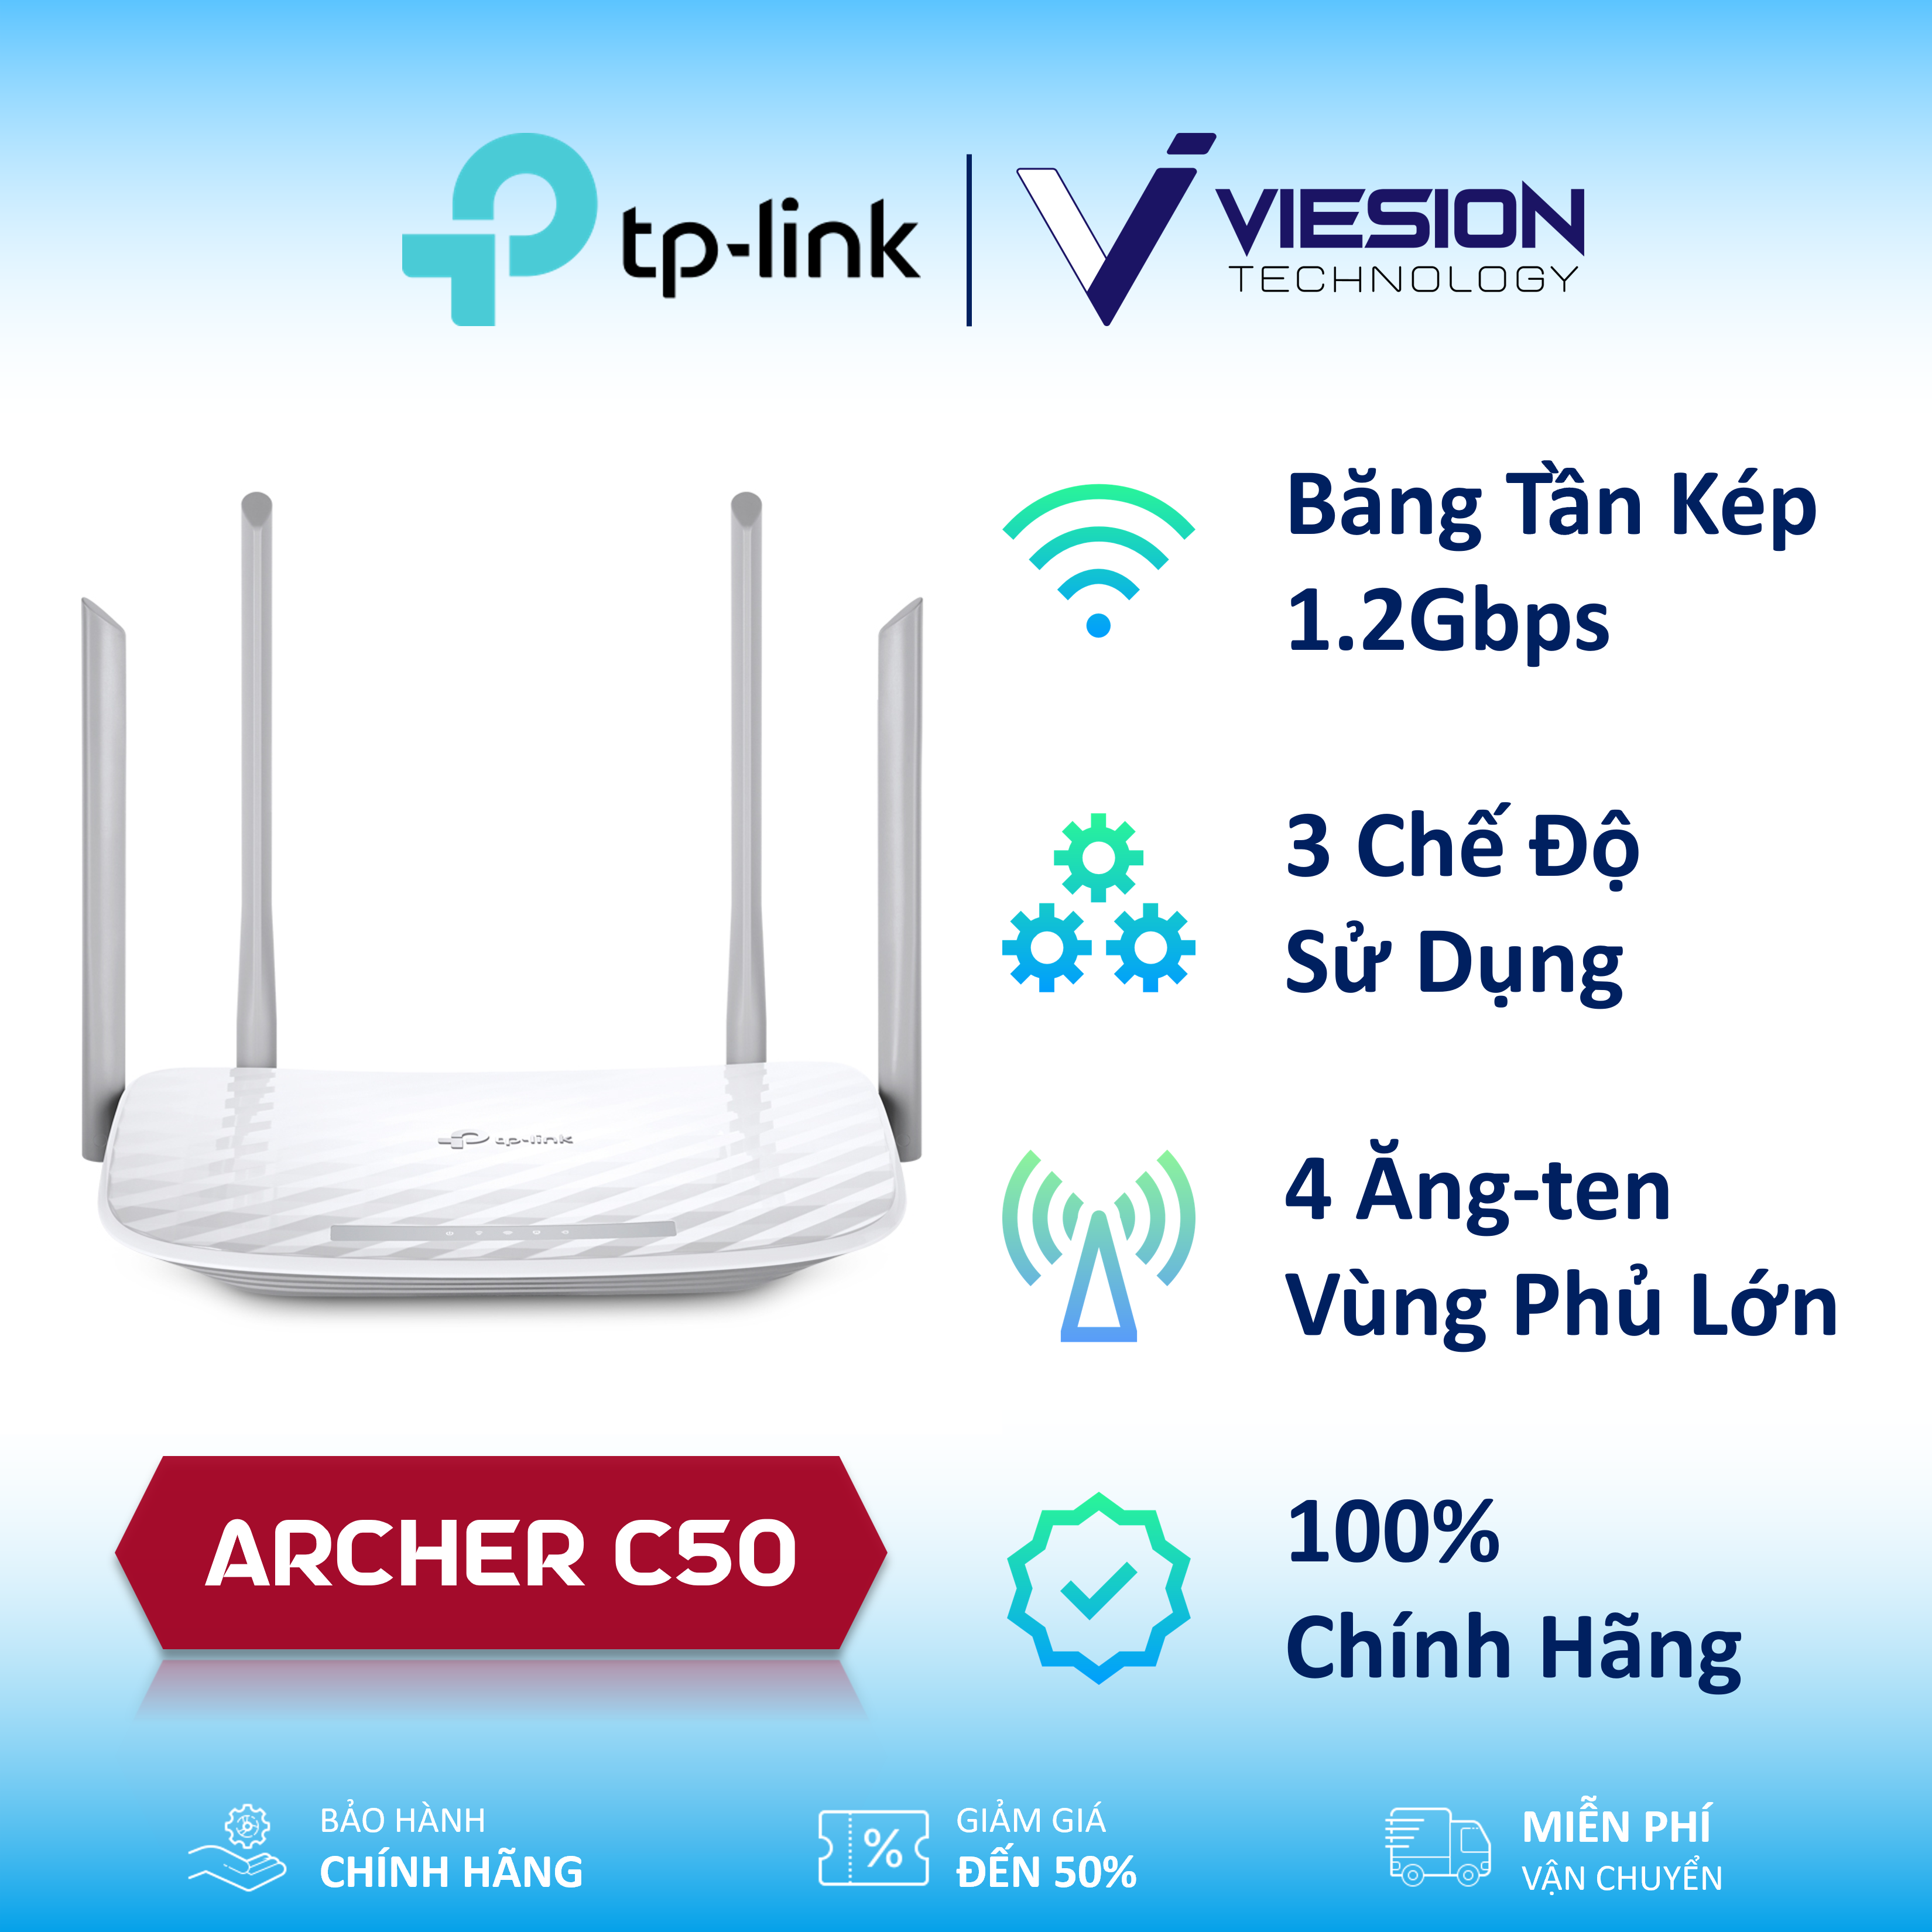 TP-Link Archer C50 - Bộ Phát Wifi Băng Tần Kép AC1200, tốc độ lên tới 1.2Gbps, 4 anten ngoài vùng phủ lớn